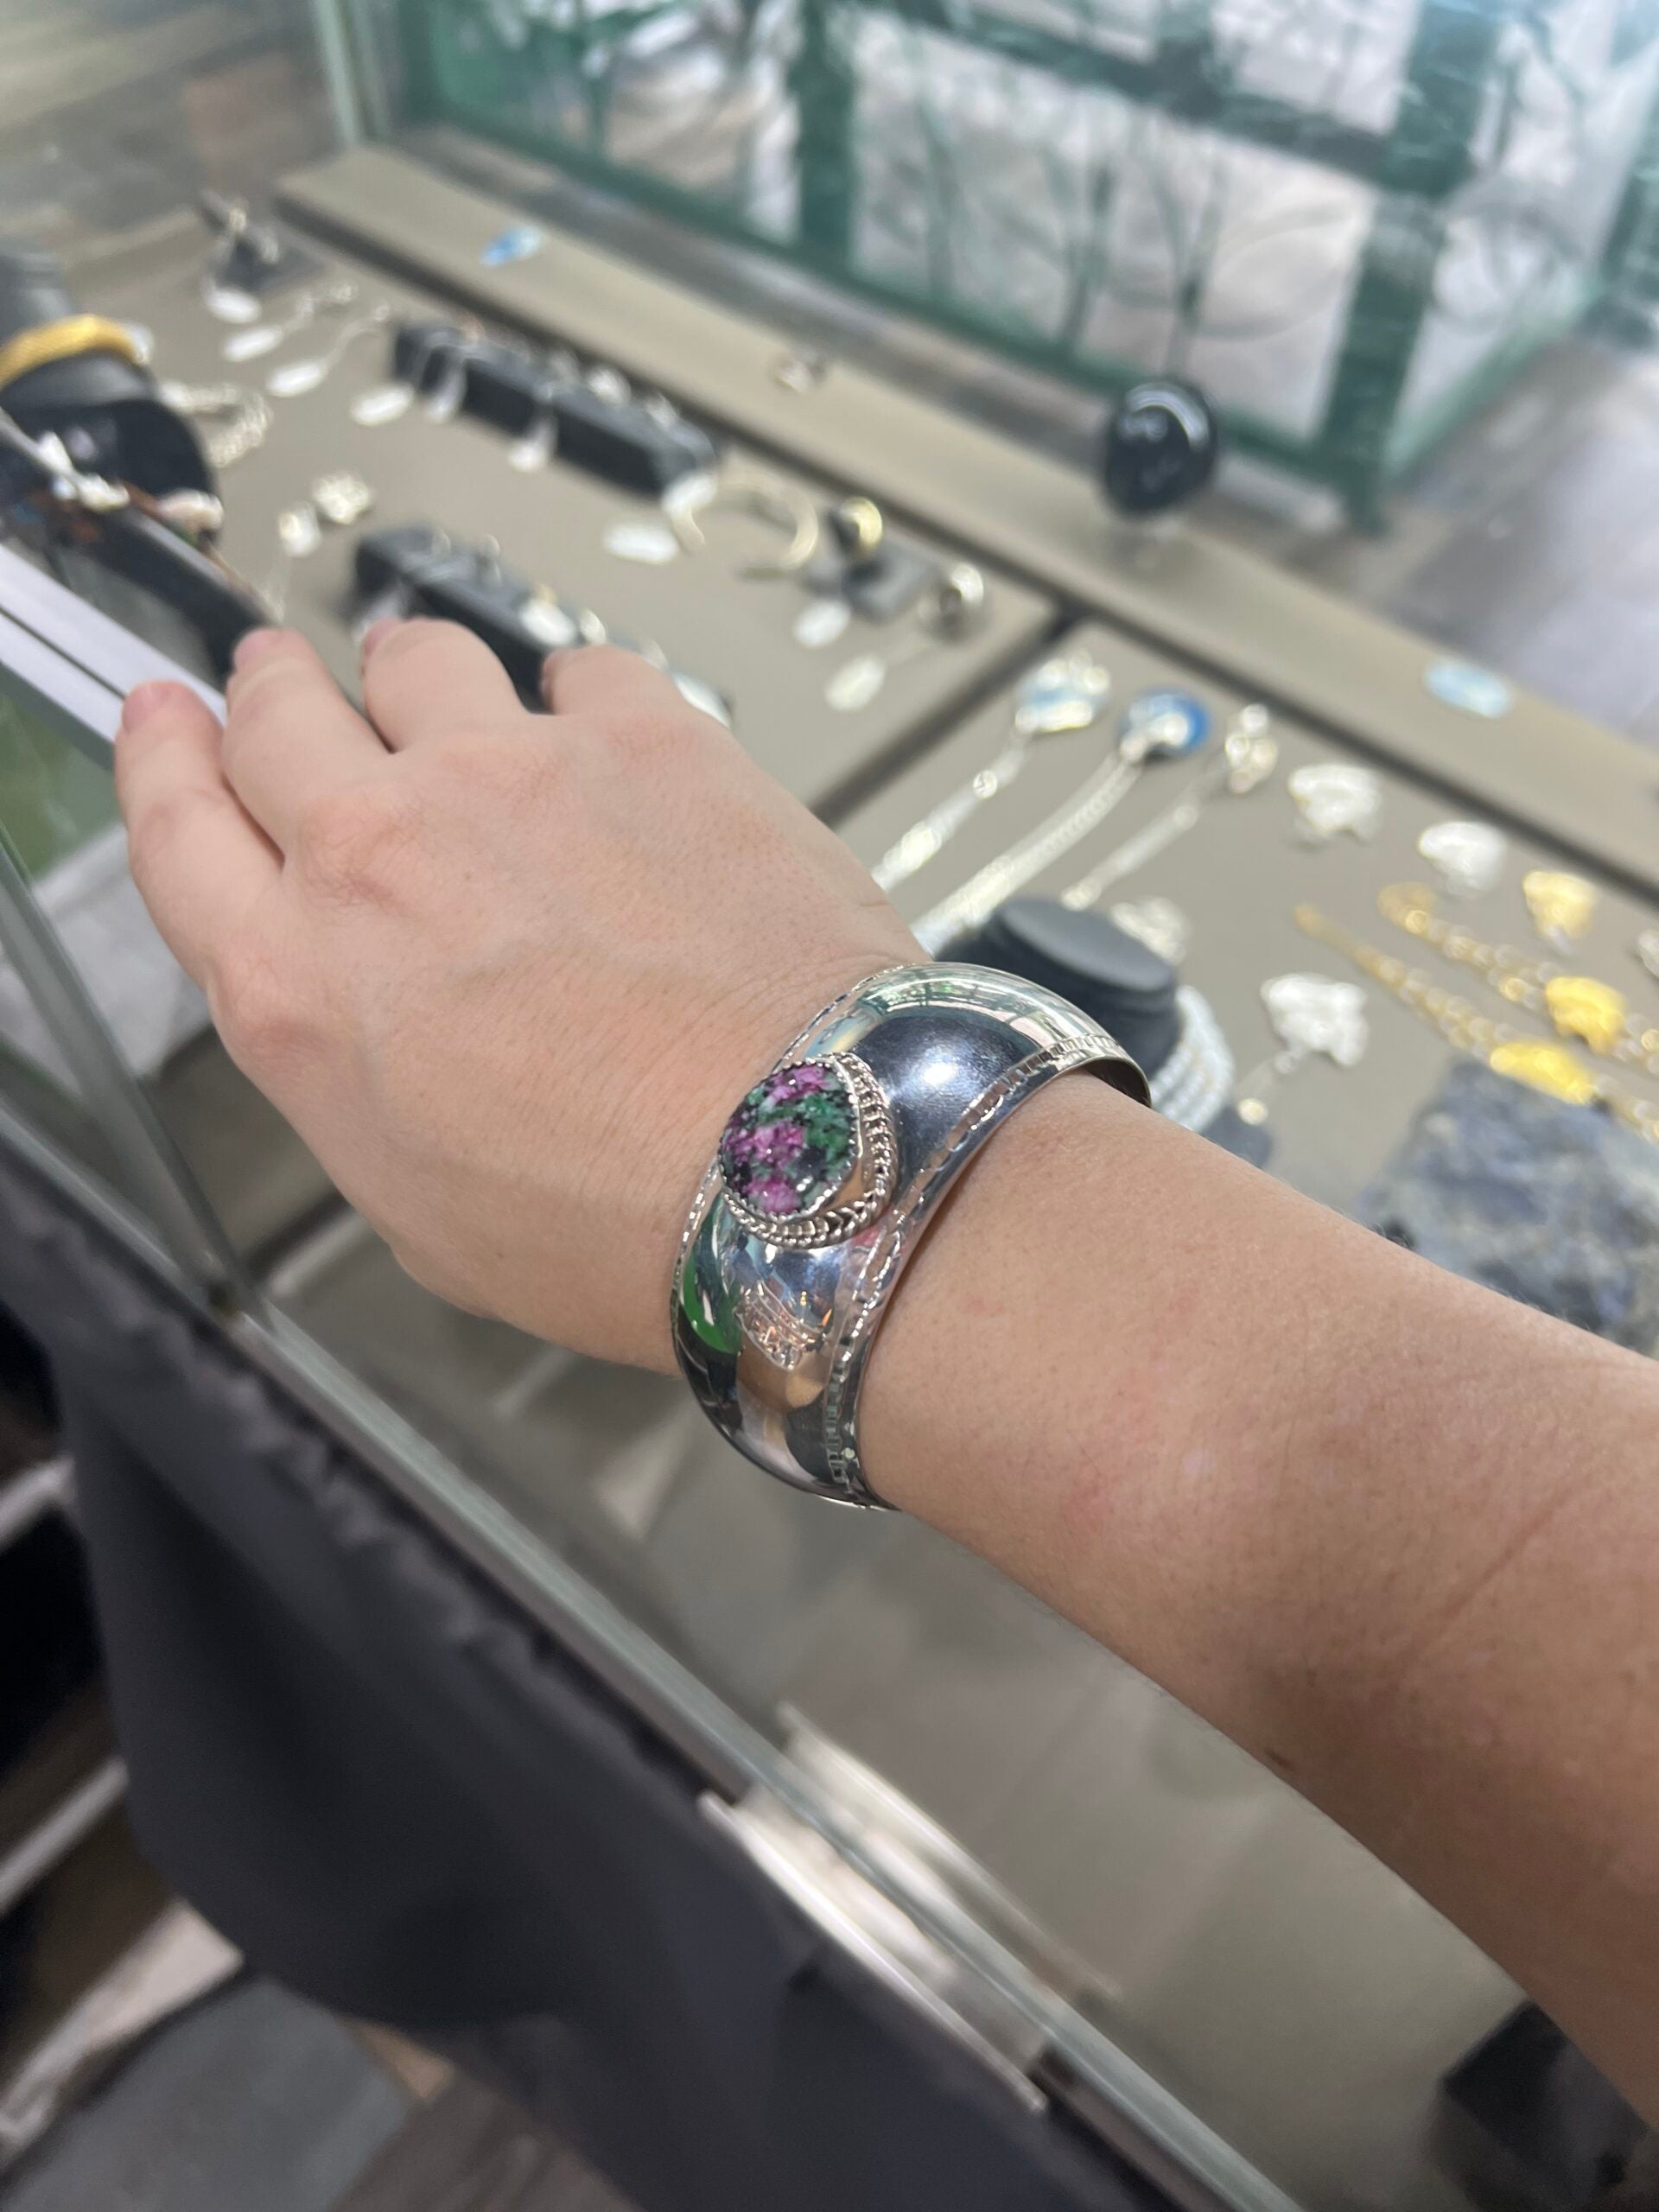 ruby in matrix sterling silver cuff bracelet on wrist